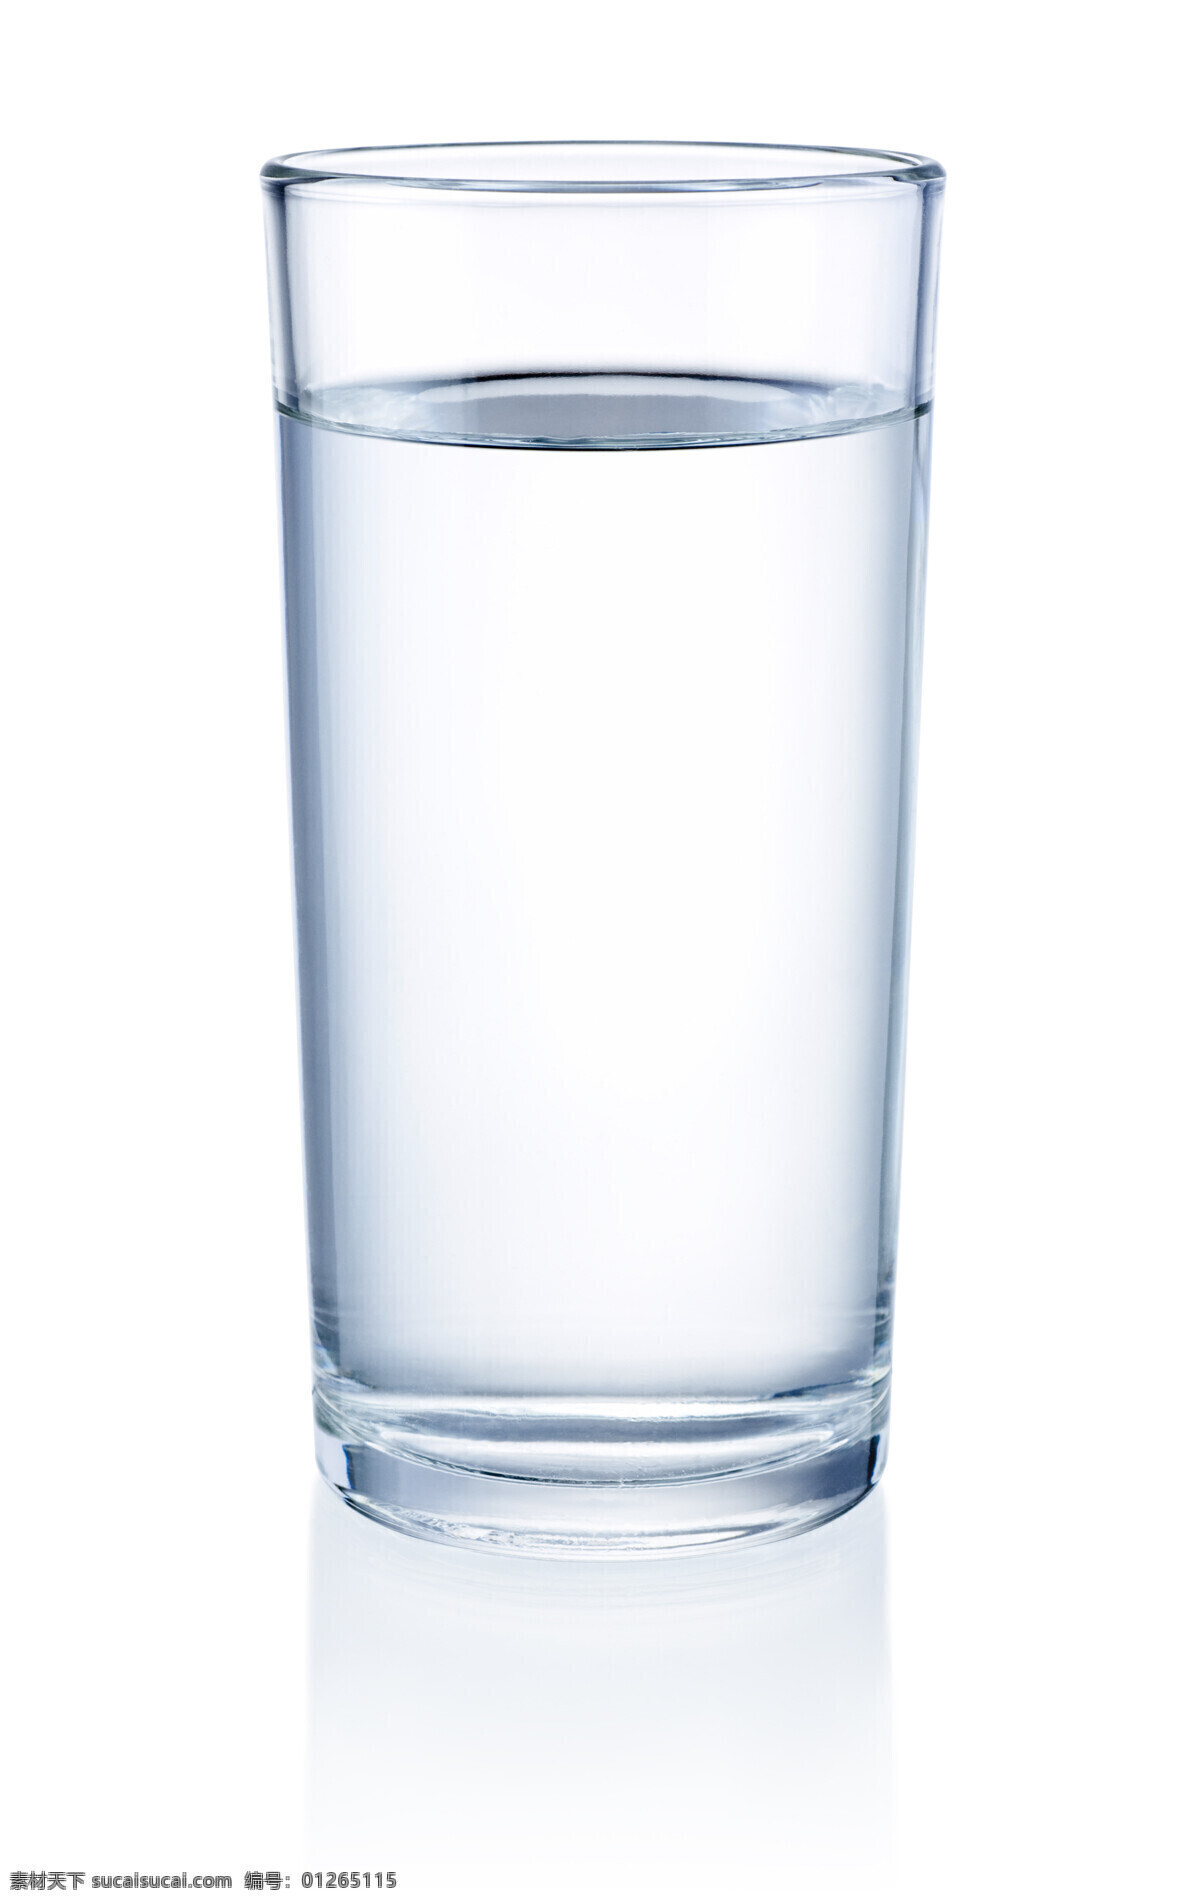 透明 一杯 清水 一杯水 水杯 玻璃杯 杯子 杯具